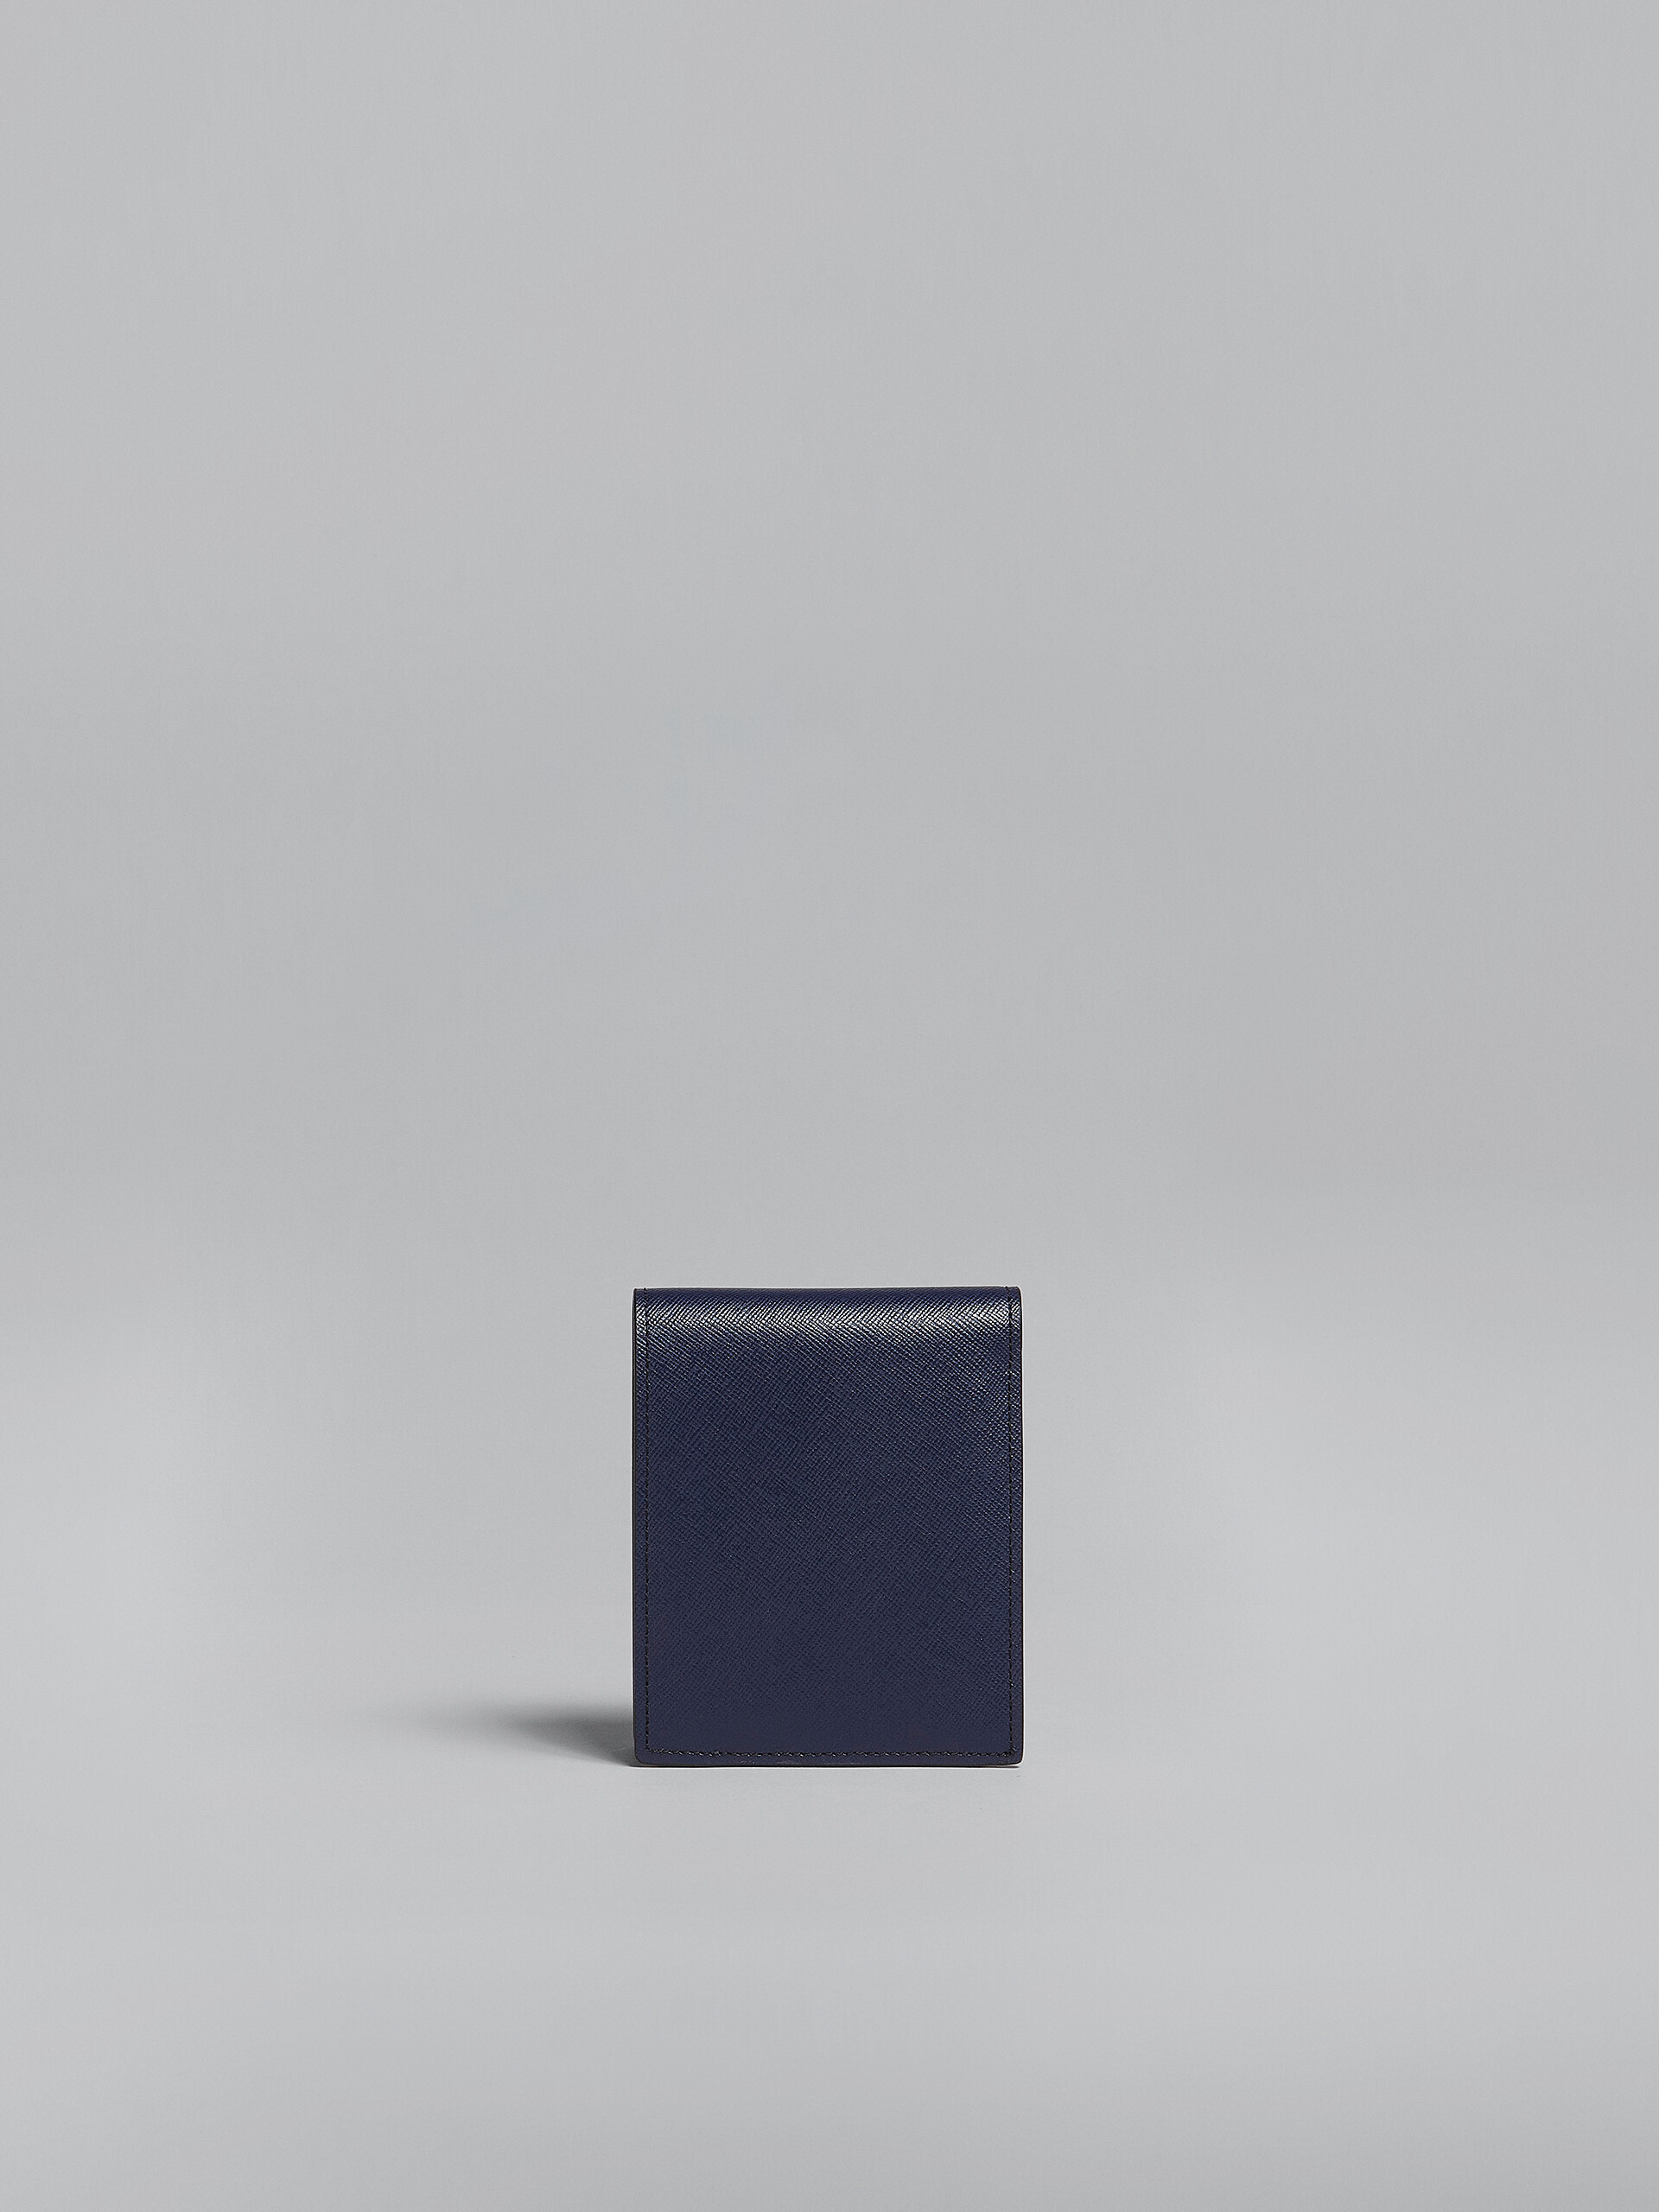 Portafoglio bi-fold in saffiano grigio e blu - Portafogli - Image 3